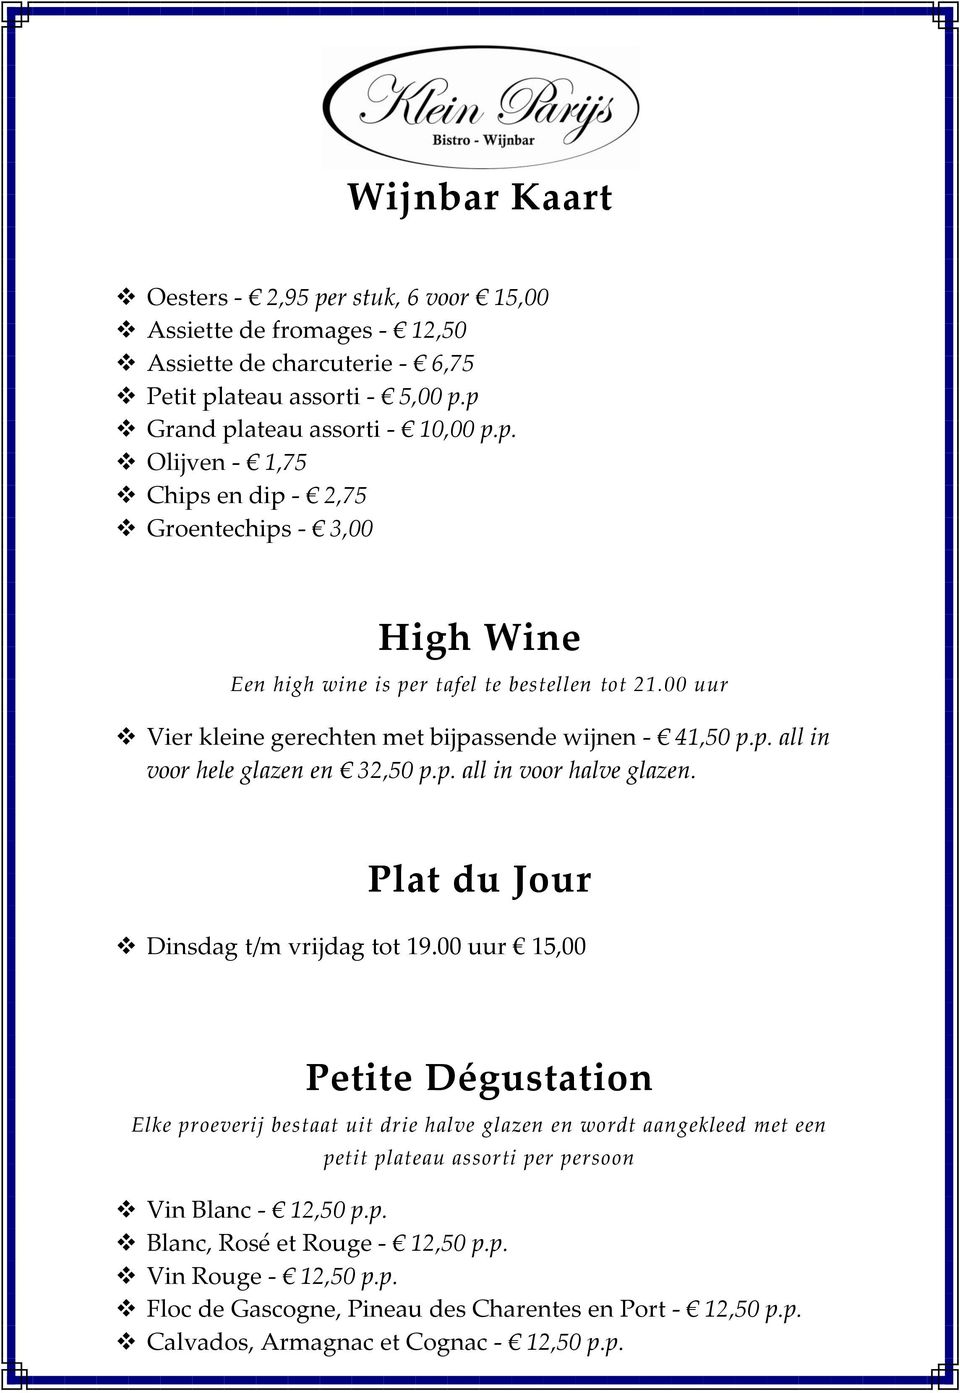 00 uur 15,00 Petite Dégustation Elke proeverij bestaat uit drie halve glazen en wordt aangekleed met een petit plateau assorti per persoon Vin Blanc - 12,50 p.p. Blanc, Rosé et Rouge - 12,50 p.p. Vin Rouge - 12,50 p.